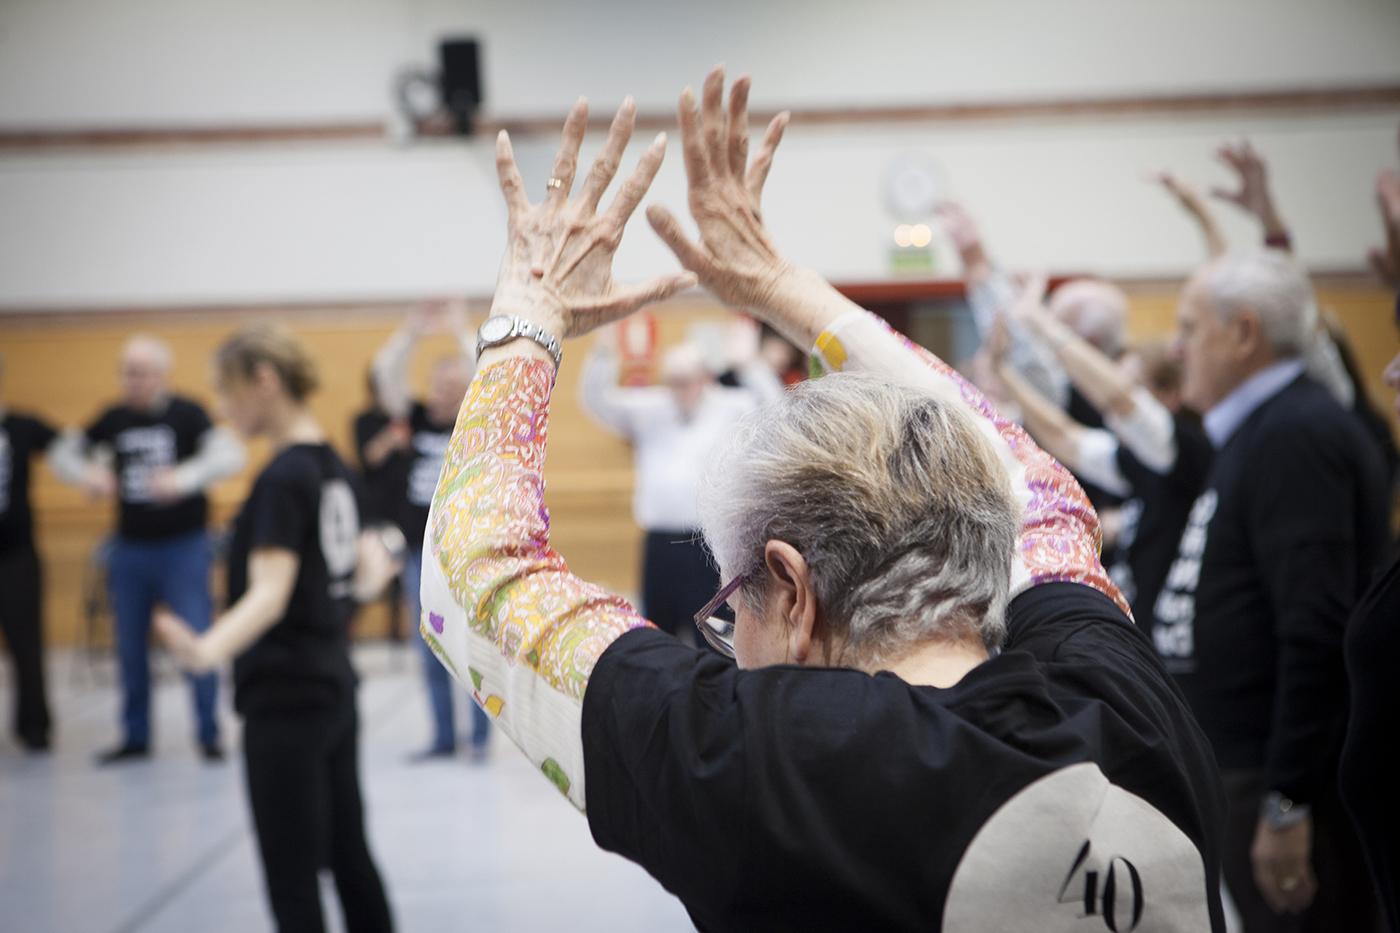 Proyecto Taller coreográfico para personas con Parkinson, de la Asociación de profesionales de la danza en la Comunidad de Madrid (Madrid), seleccionado en la convocatoria 2019 del programa Art for Change